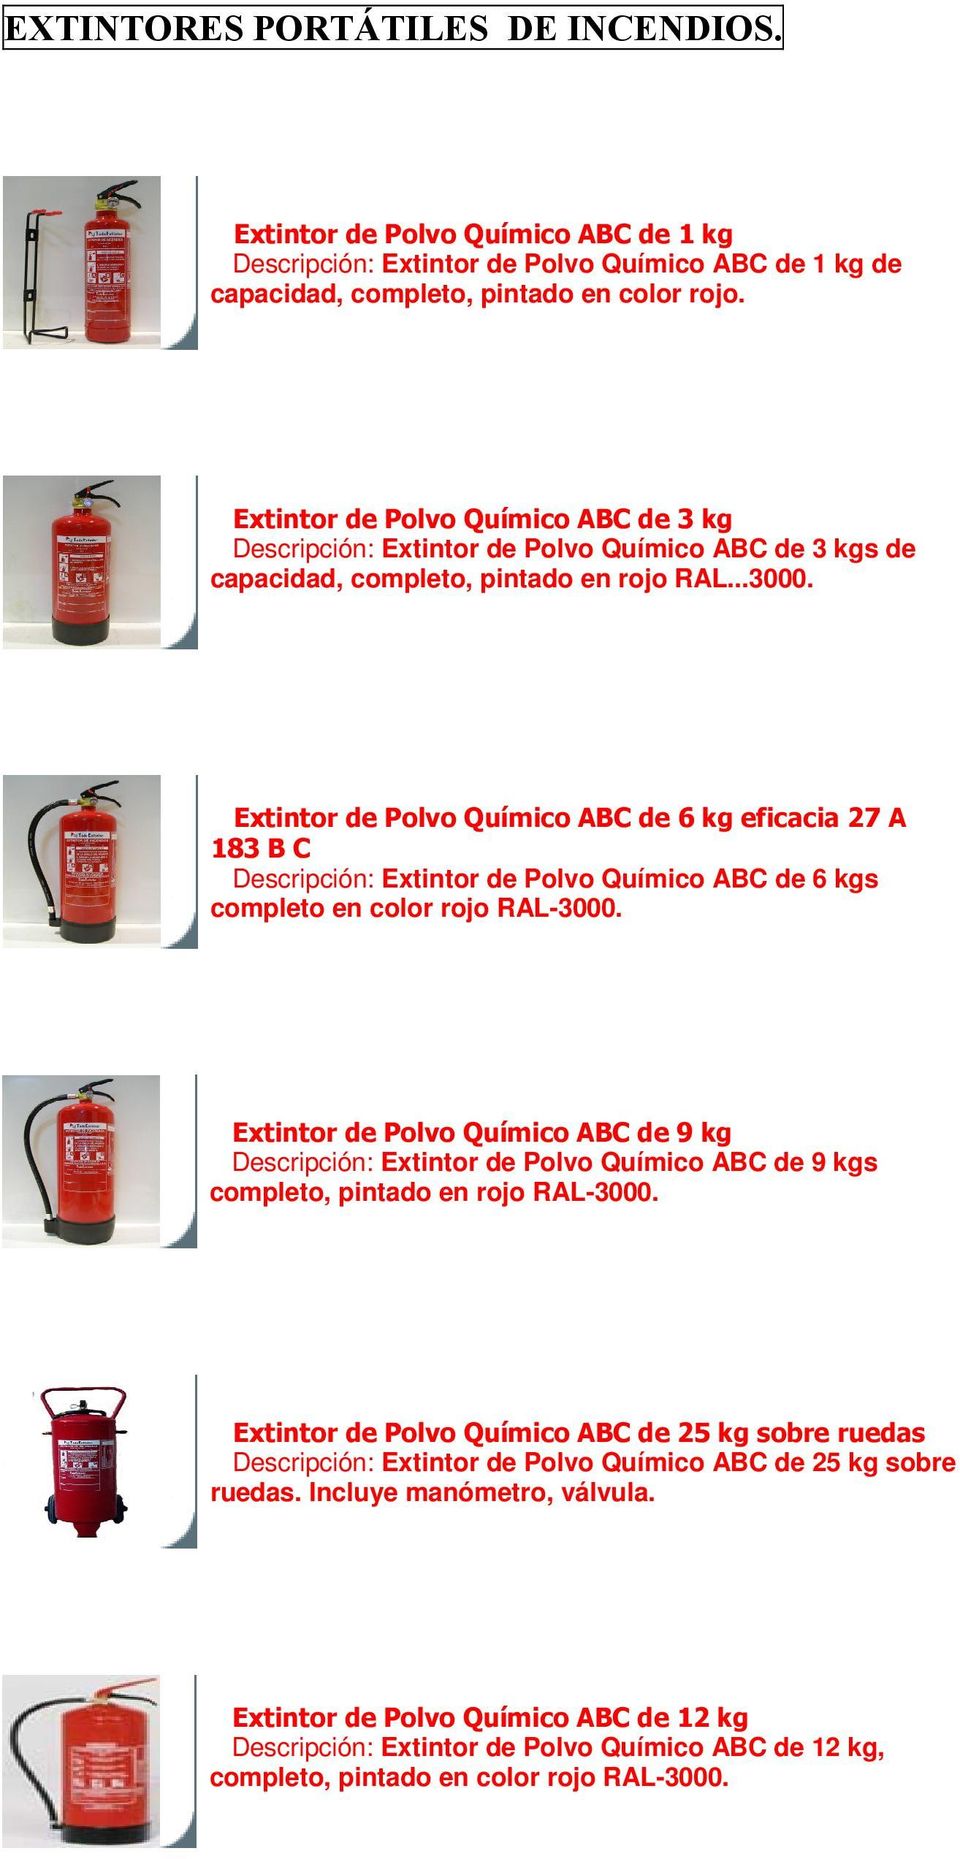 Extintor de Polvo Químico ABC de 6 kg eficacia 27 A 183 B C Descripción: Extintor de Polvo Químico ABC de 6 kgs completo en color rojo RAL-3000.